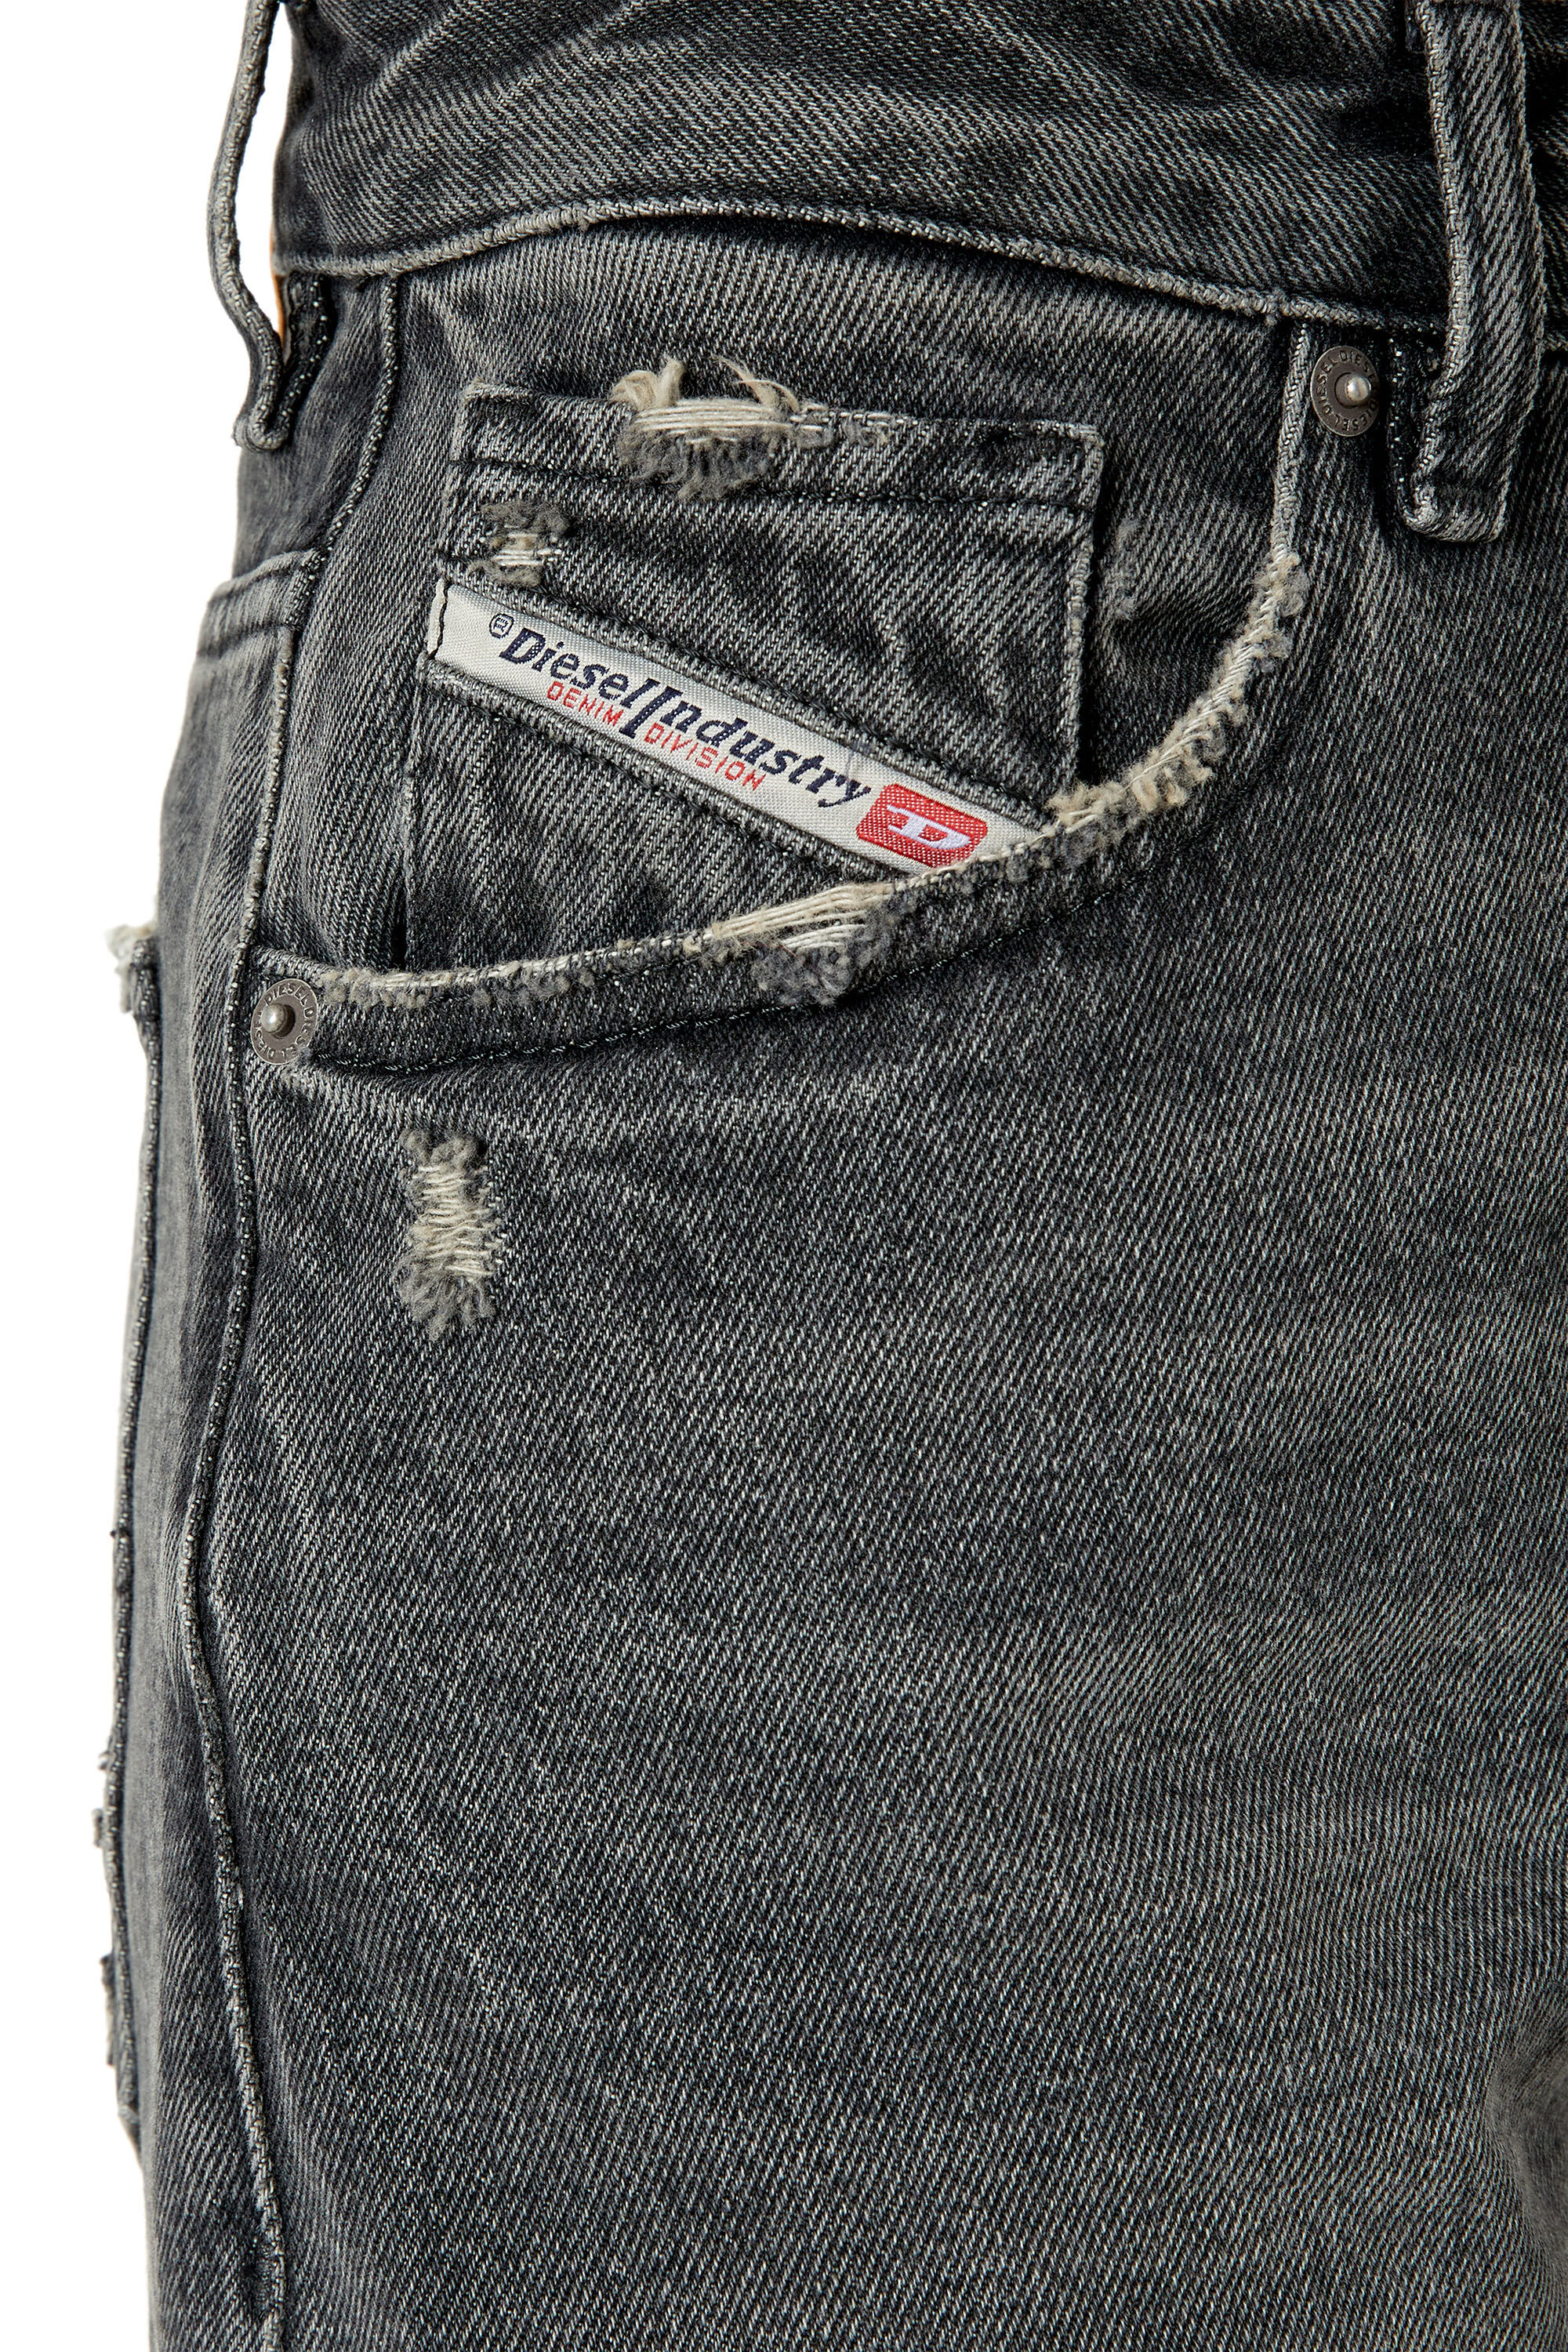 Diesel - Straight Jeans 1999 D-Reggy 007K8, Black/Dark grey - Image 5